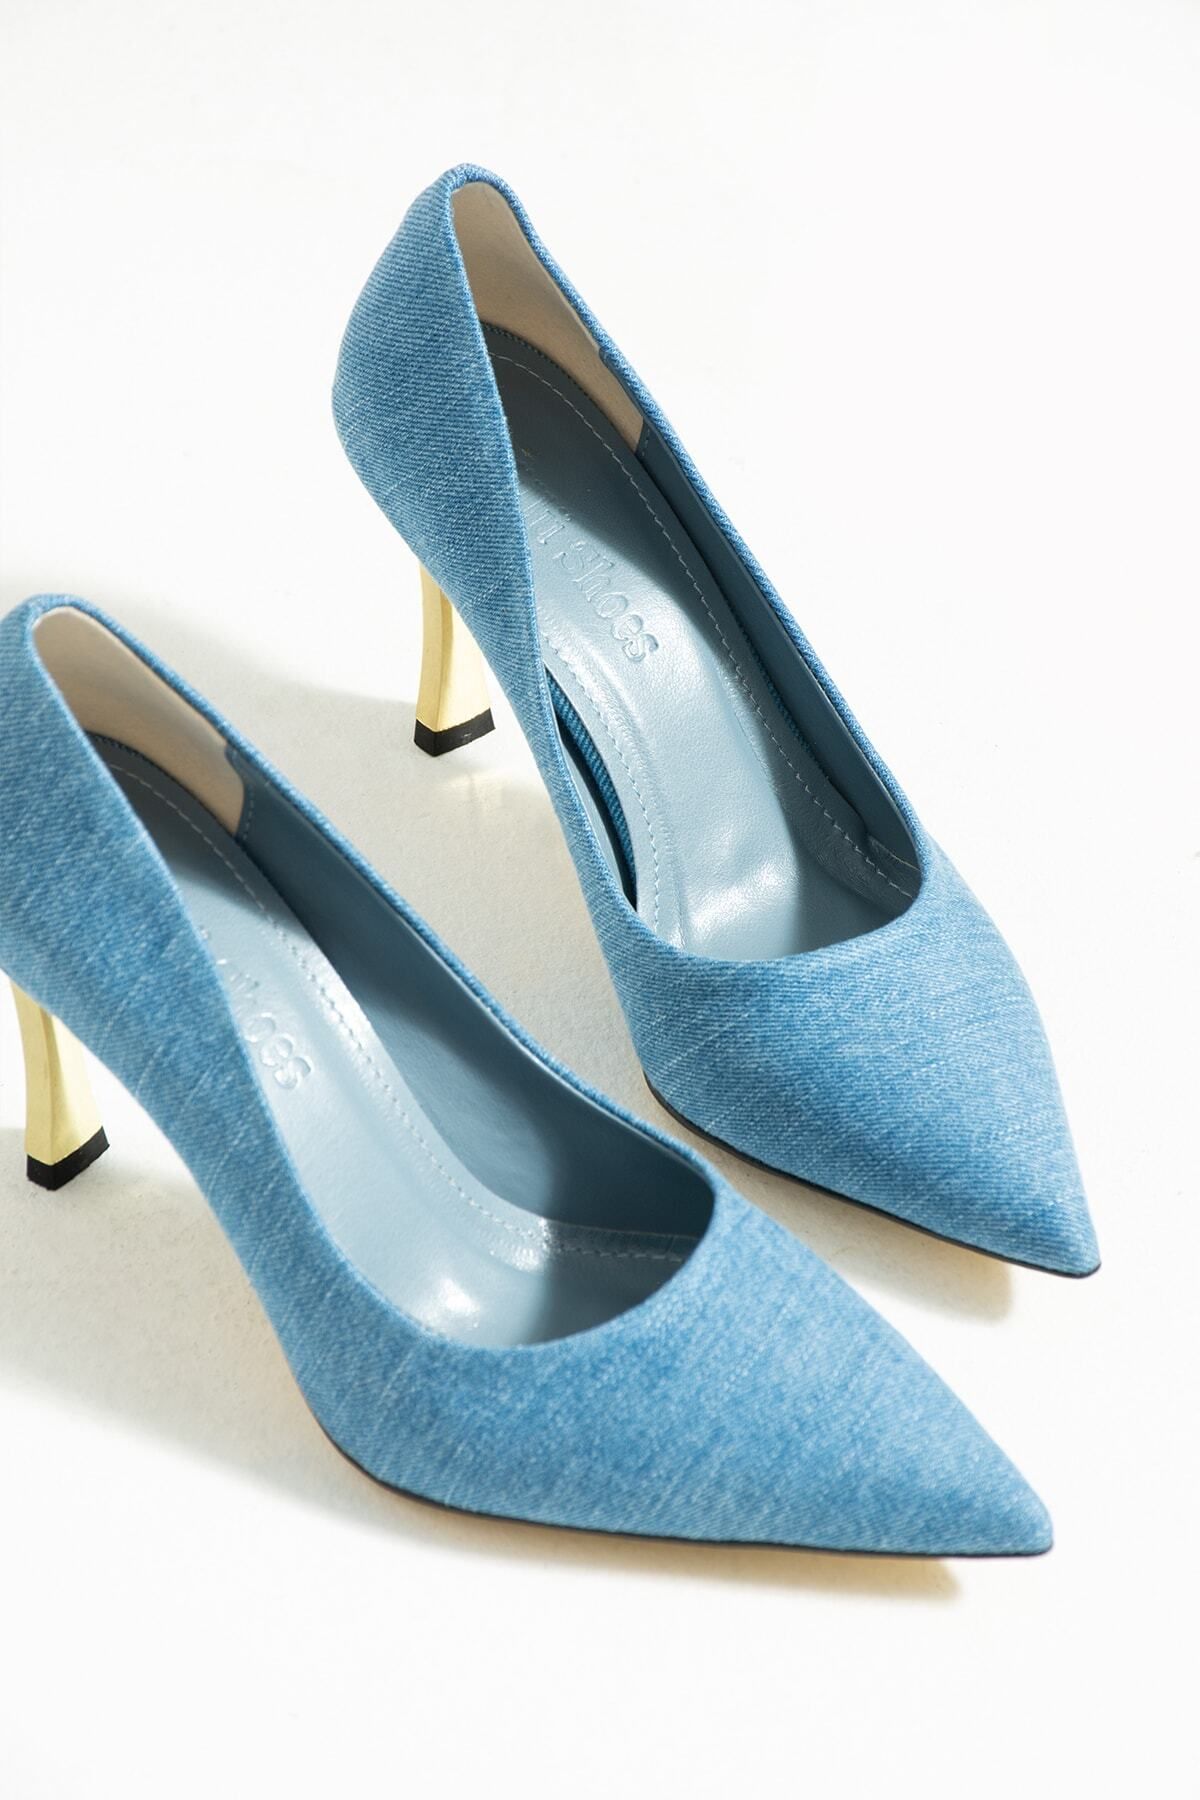 Güllü Shoes Kadın Topuklu Ayakkabı - Yüksek Topuklu Stiletto Rahat Şık ve İnce İş Ayakkabısı Mavi Kot 9 cm